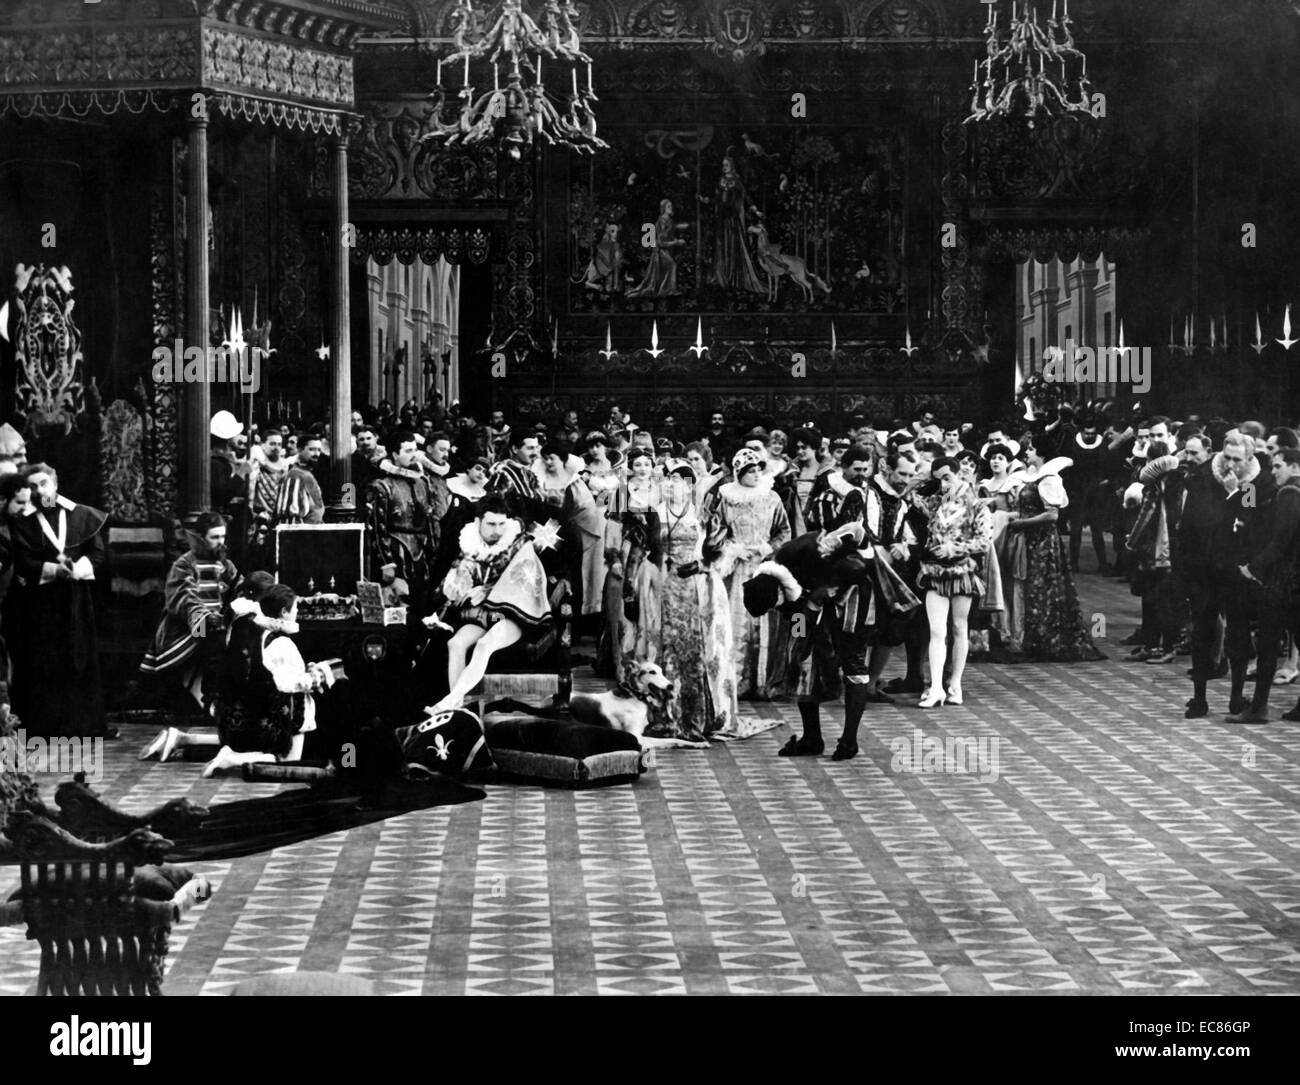 Ancora dal film muto "l'intolleranza" diretto da D. W. Griffith. Staring Lillian Gash, Mae Marsh, Erich von Stroheim e Douglas Fairbanks. Datata 1916 Foto Stock